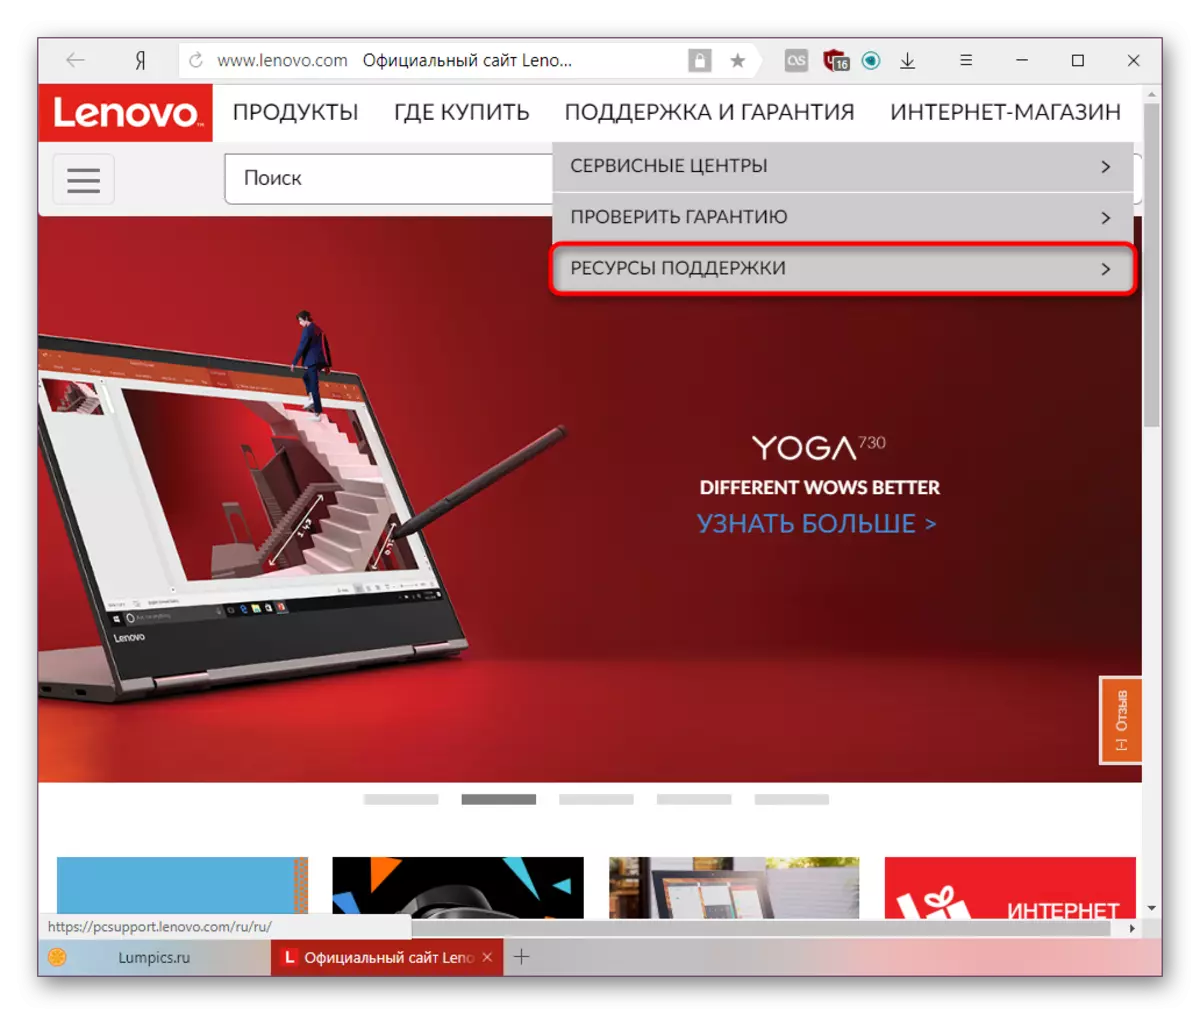 Identifikohu për të mbështetur pajisjen në faqen zyrtare të Lenovos